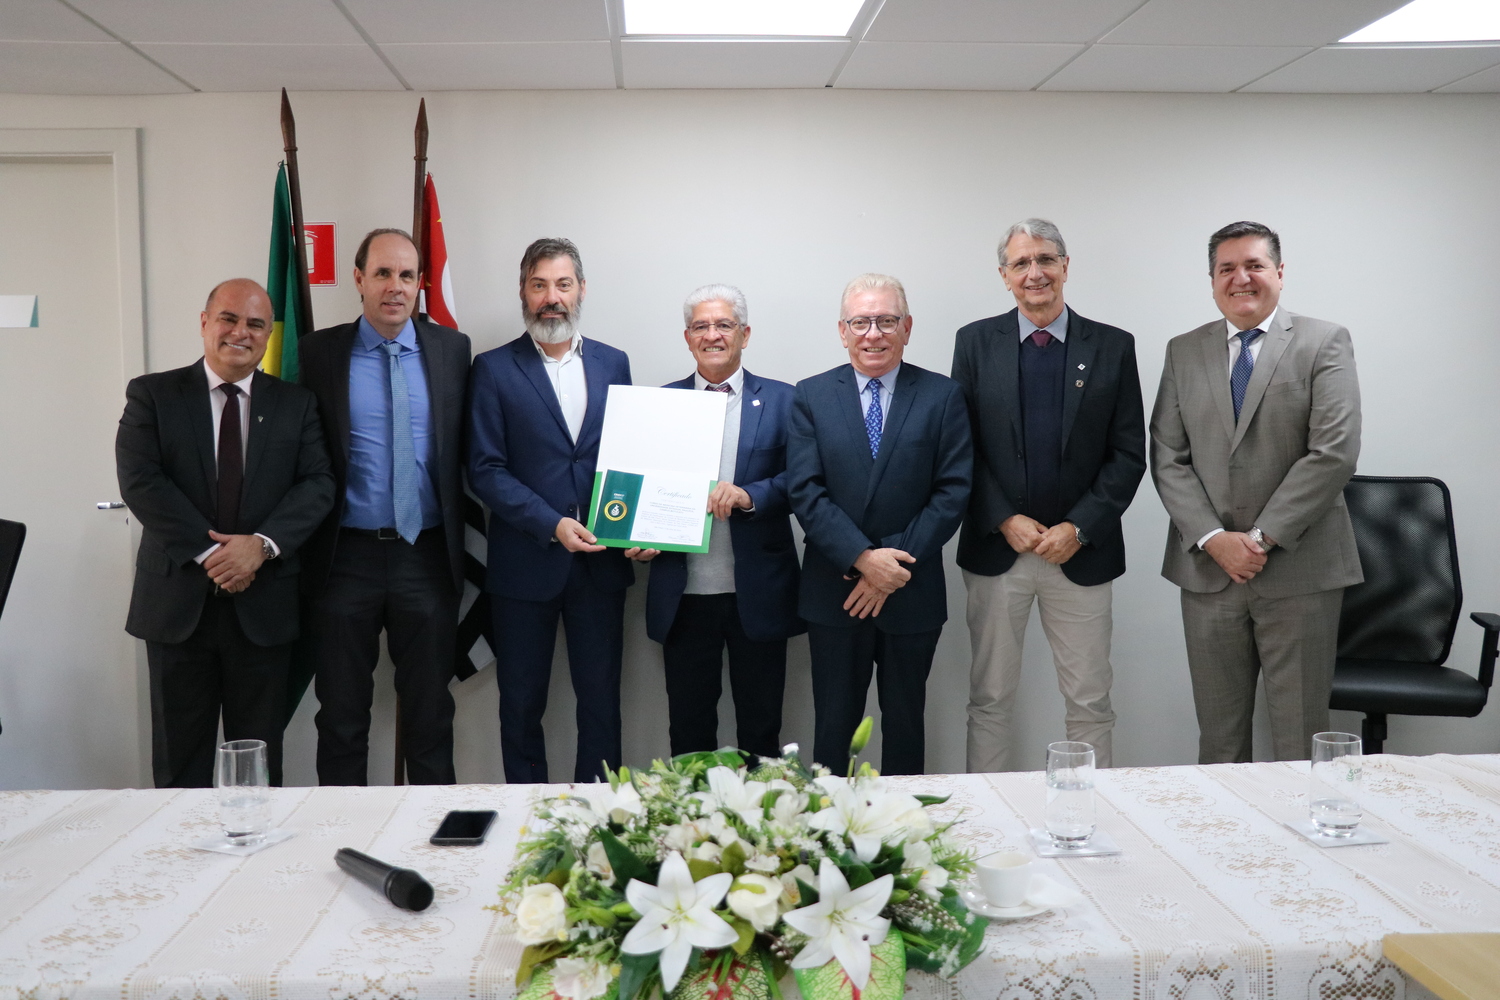 Sete homens, lado a lado, sendo dois membros da Diretoria Executiva do CRMV-SP, e os demais representantes da FMVZ-Unesp - Campus Botucatu, com o certificado recebido.